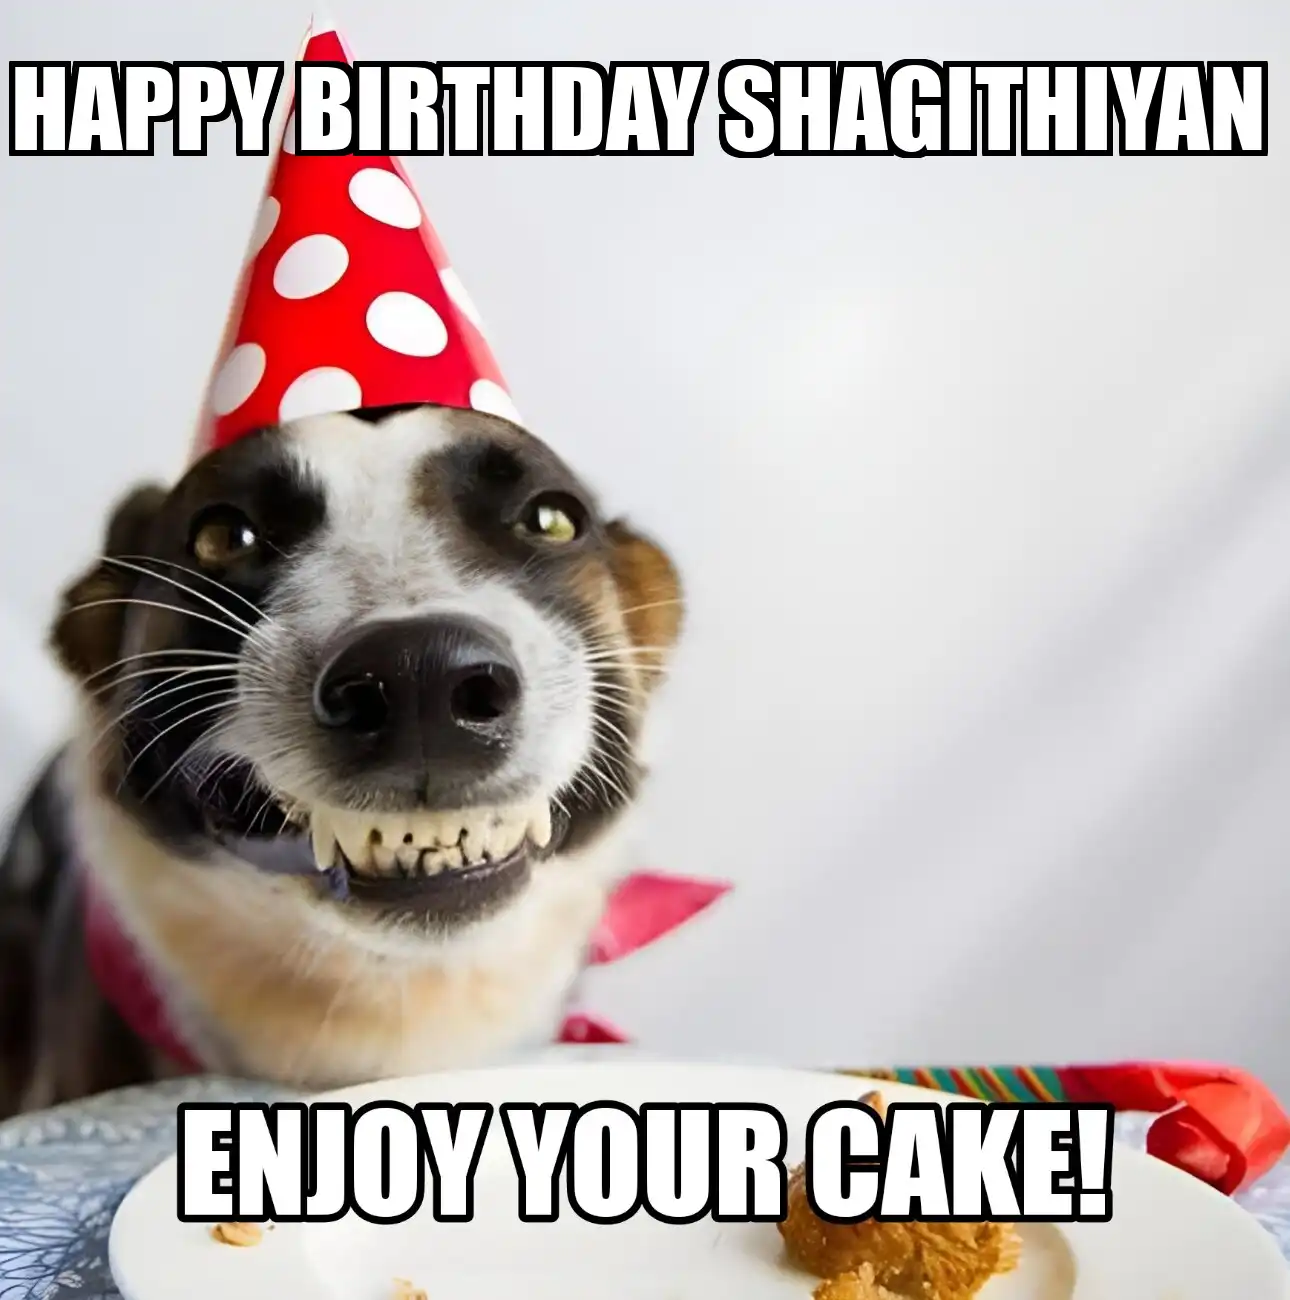 Happy Birthday Shagithiyan Enjoy Your Cake Dog Meme